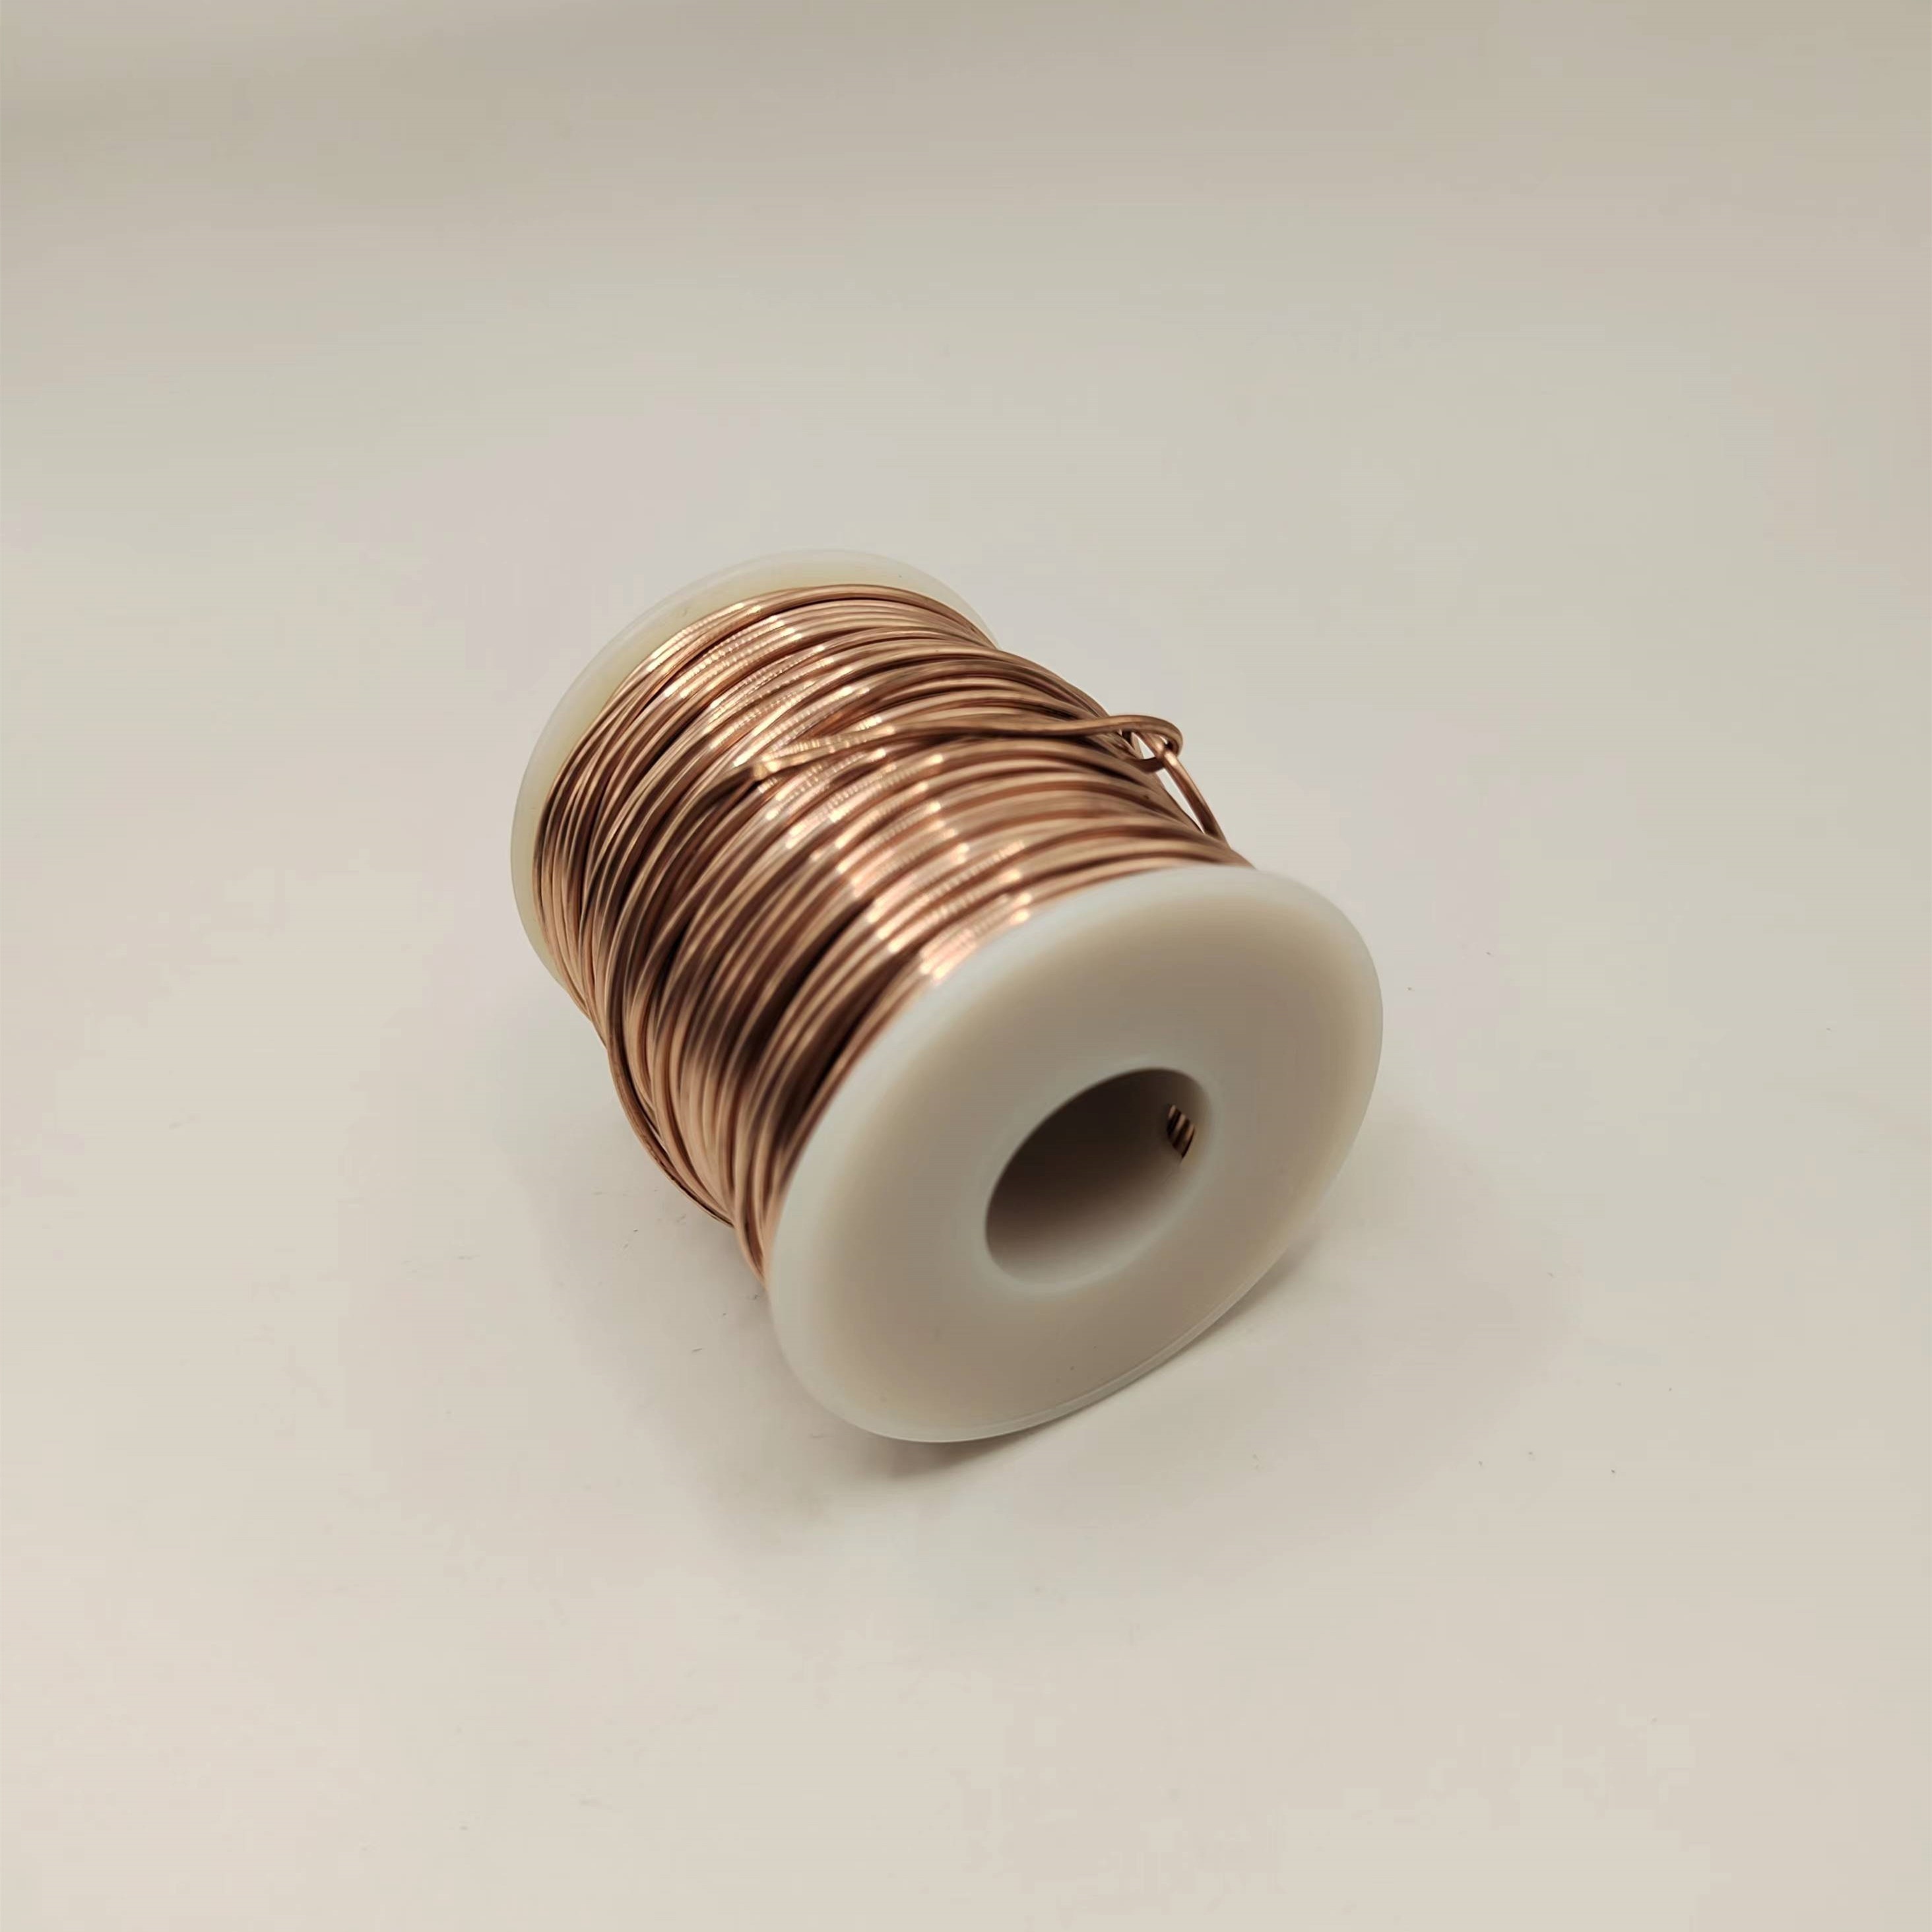 Bare Copper Wire 0.8mm Bare Copper 20 Gauge Wire Pure Copper Wire Length 33  Feet/10m Solid Bare Copper Wire Round Soft Wire